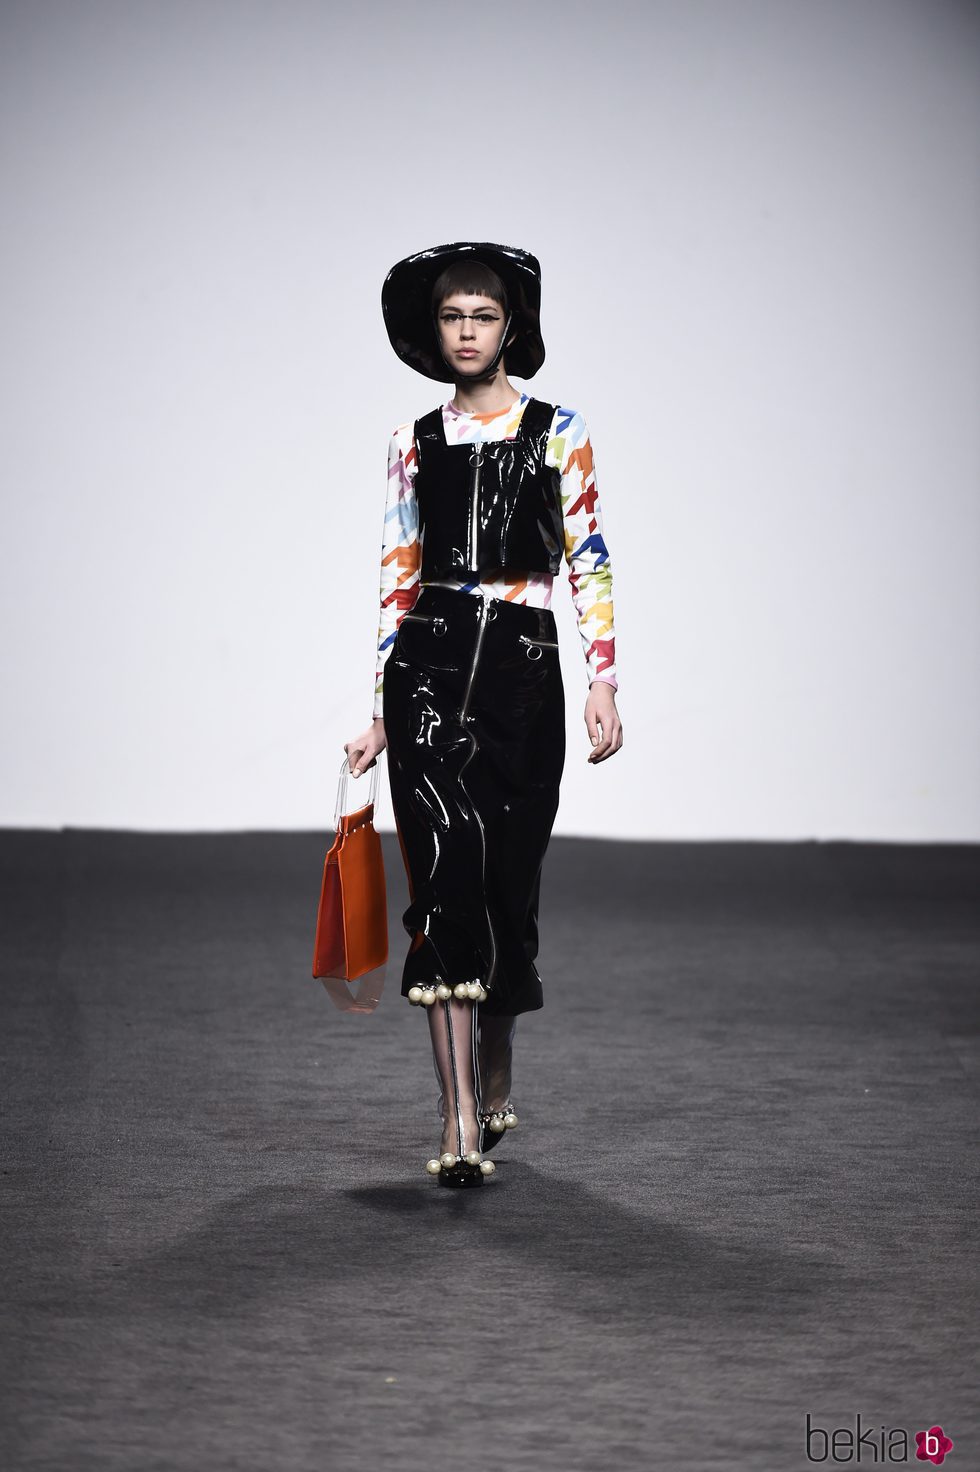 Top y falda negros de María Escote de la campaña otoño/invierno 2018/2019 en la Madrid Fashion Week